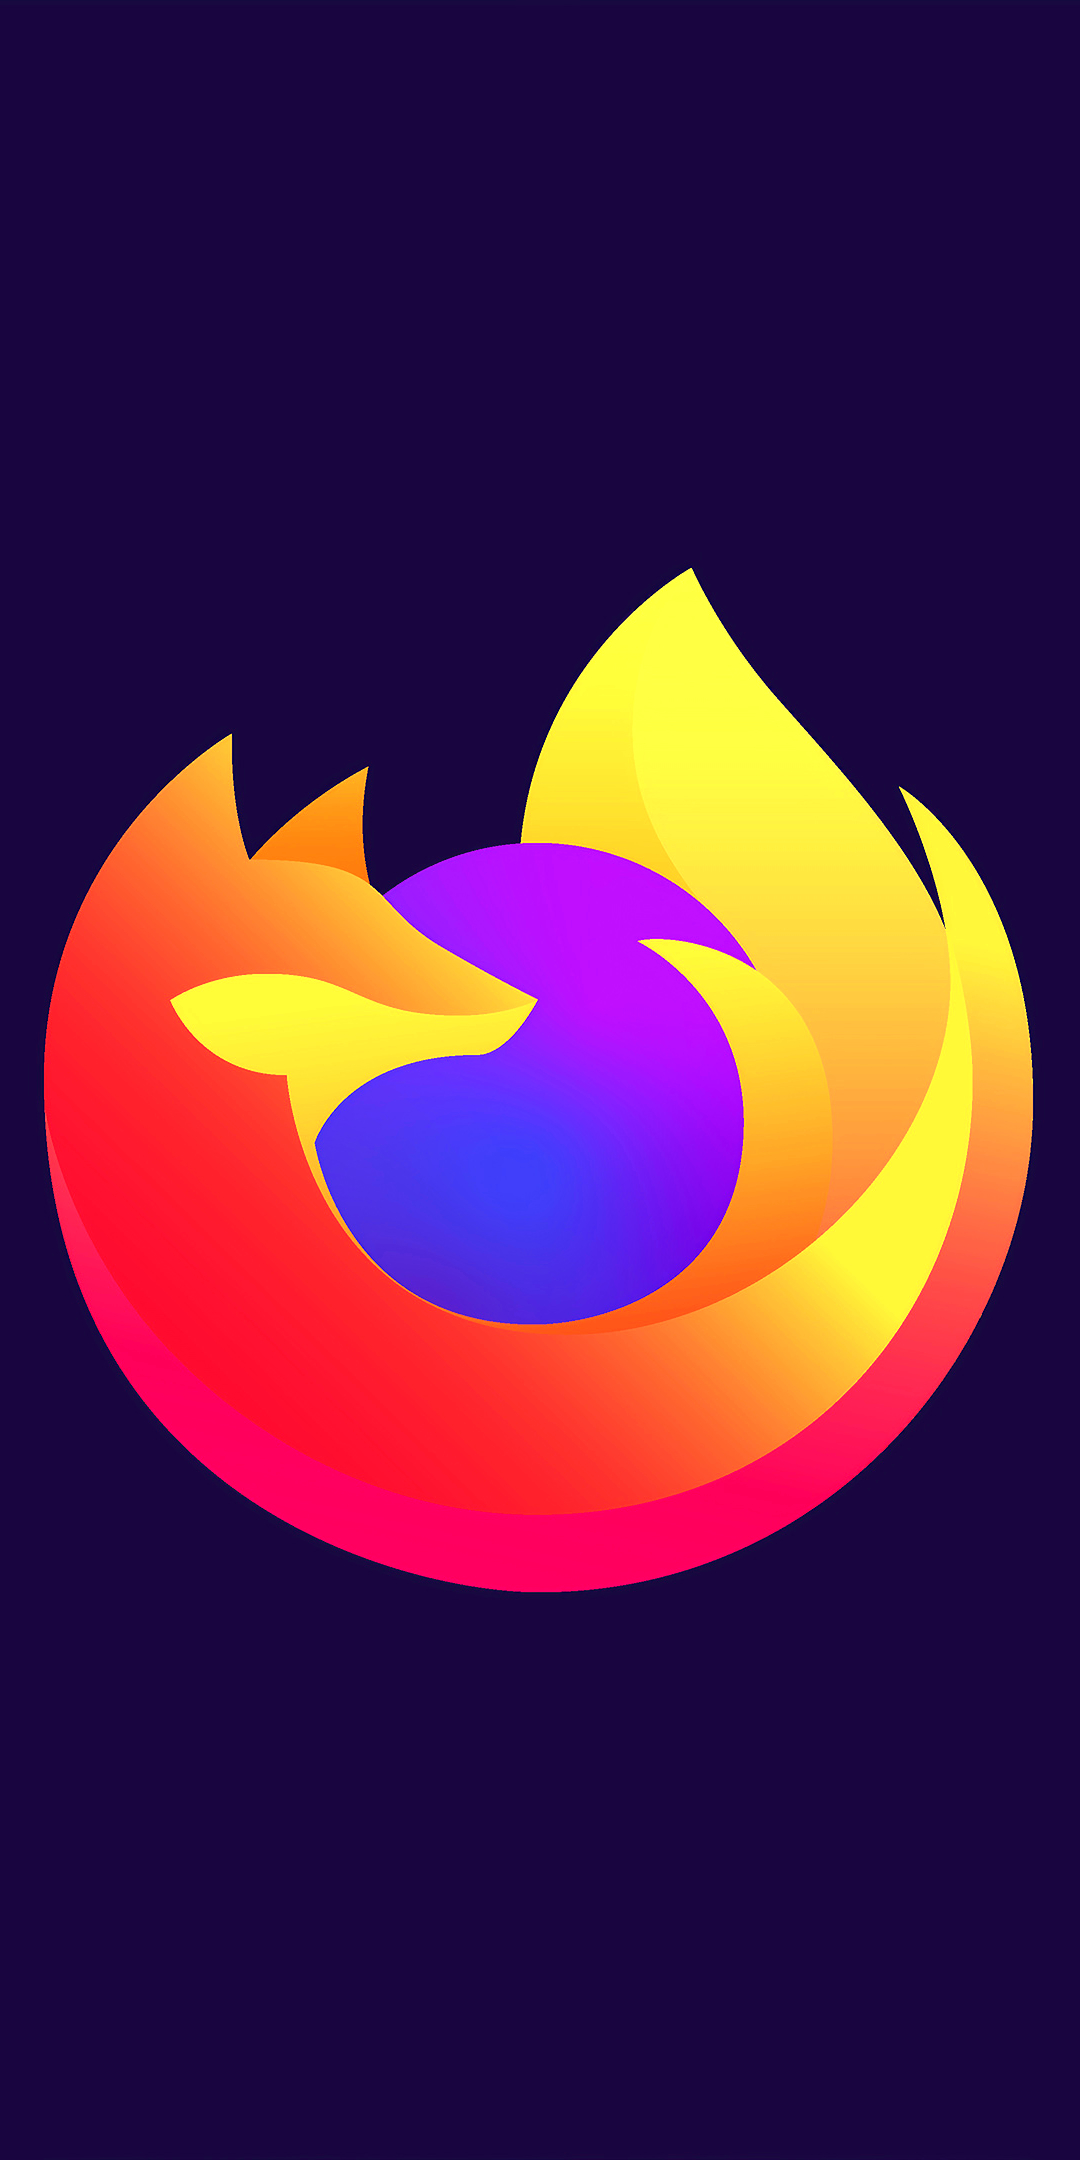 Firefox Phone Wallpaper